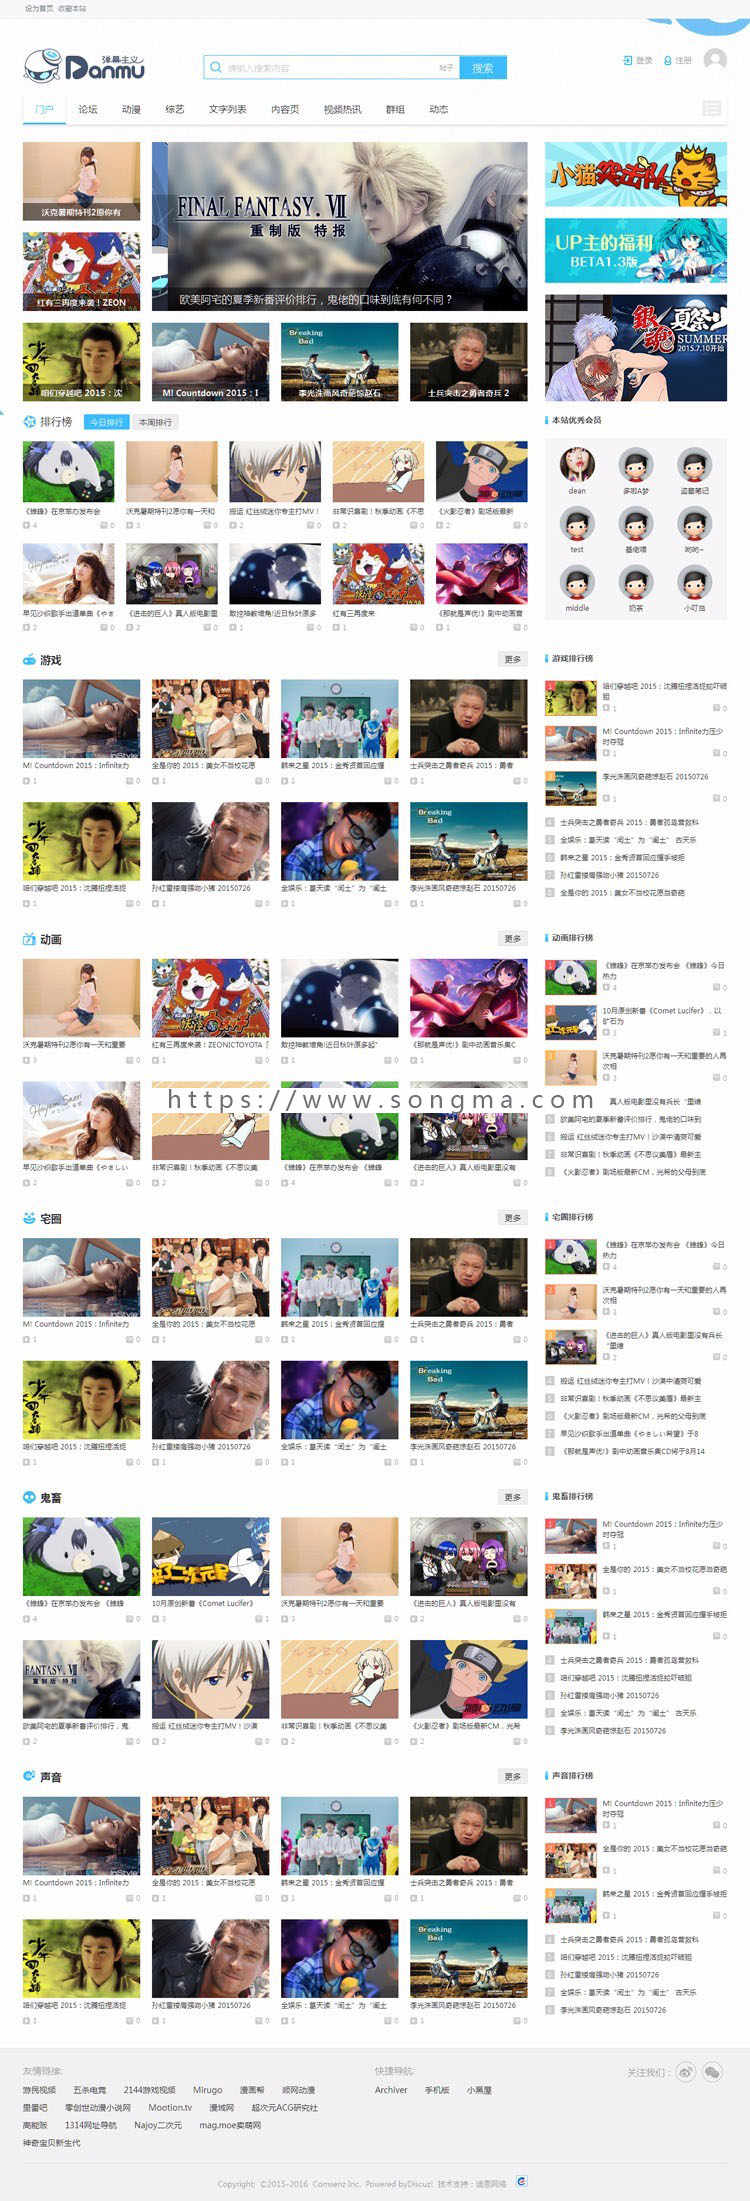 DZ模板迪恩video视频站风格 商业版 Discuz! X3.2 动漫 影视 网站